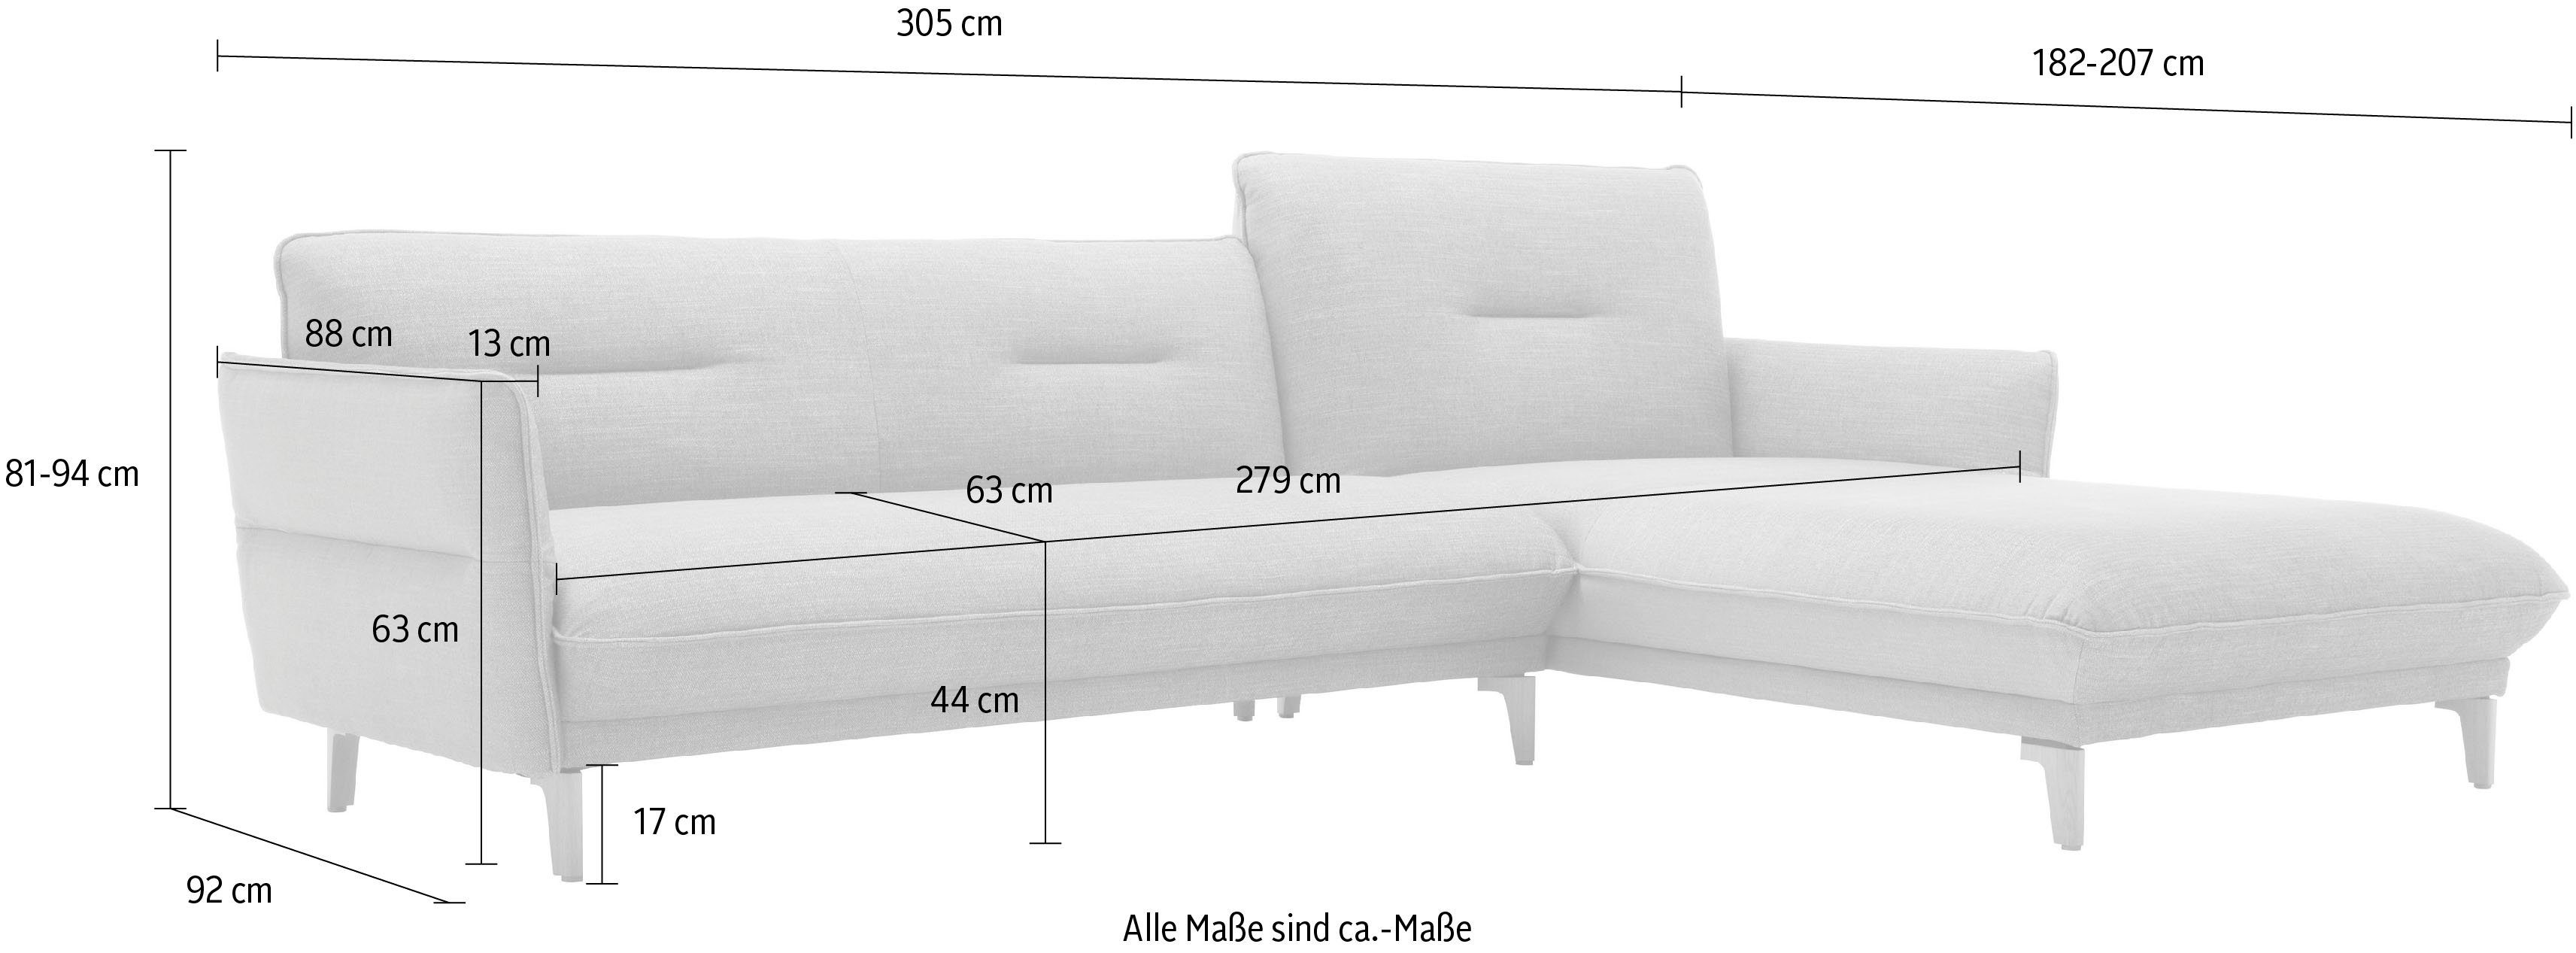 hülsta sofa Ecksofa hs.430, Recamiere 068-30 steingrau 305 Rücken Breite cm hoher mit Neigefunktion